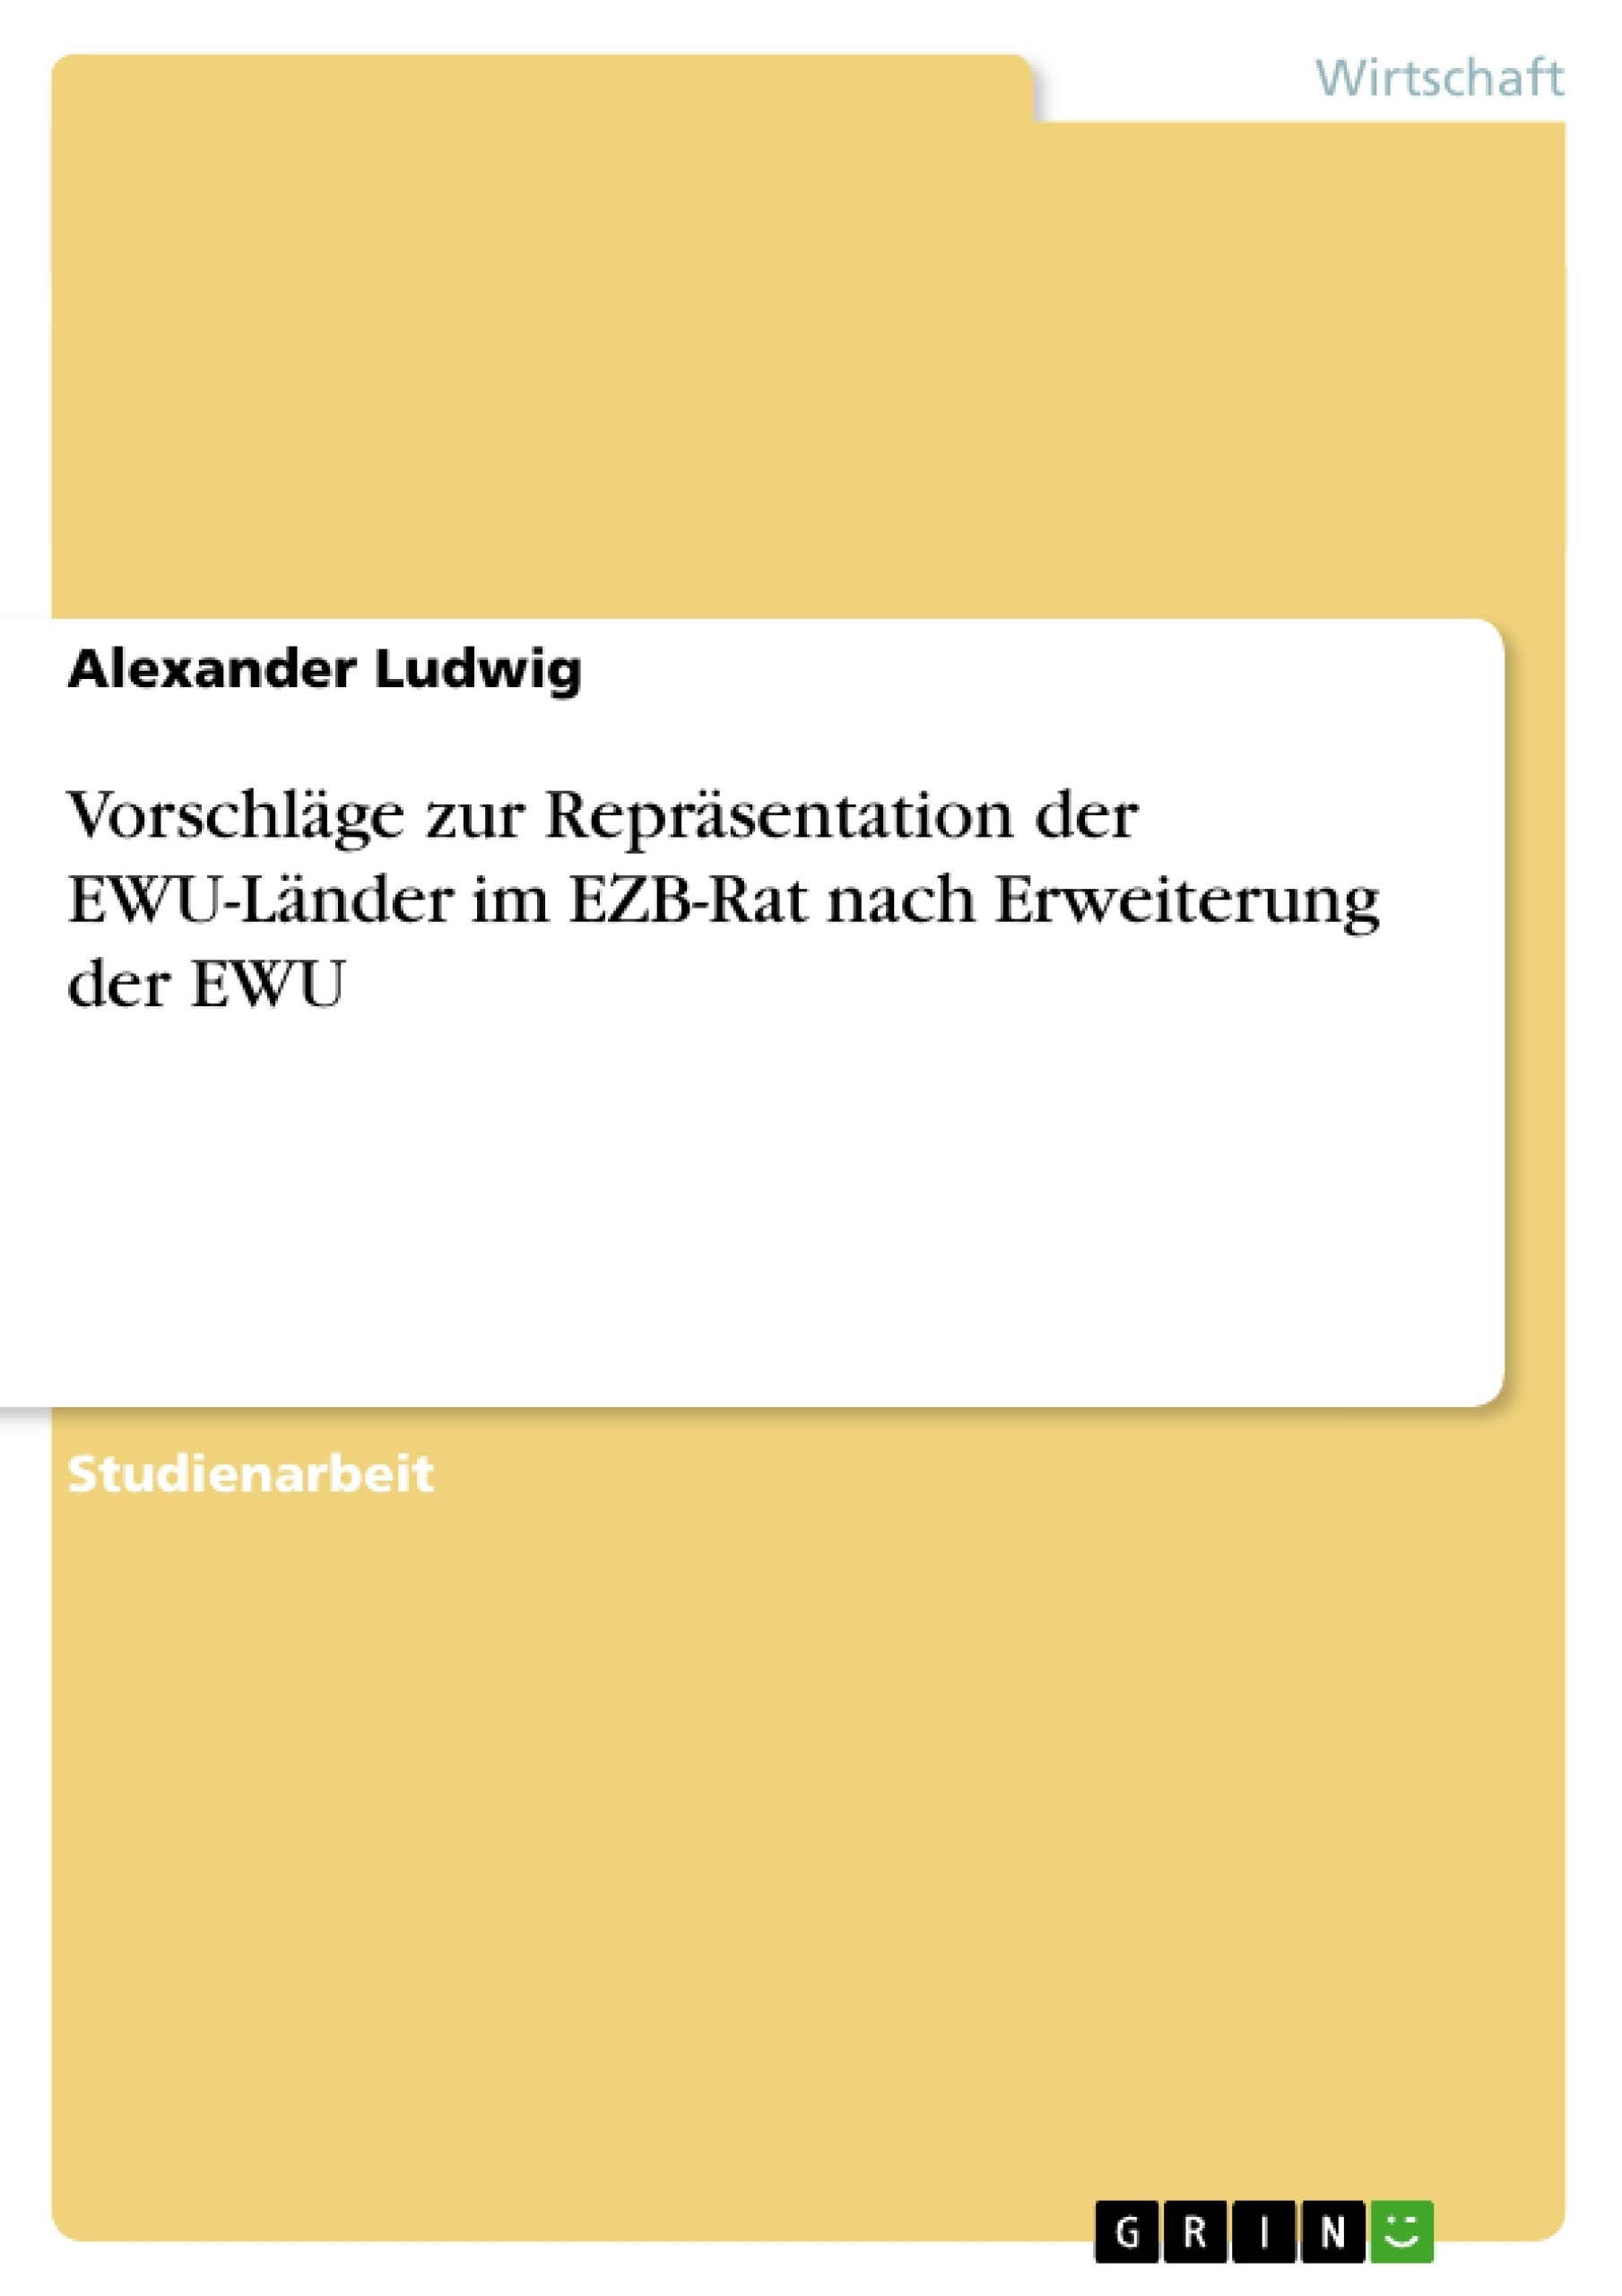 Title: Vorschläge zur Repräsentation der EWU-Länder im EZB-Rat nach Erweiterung der EWU